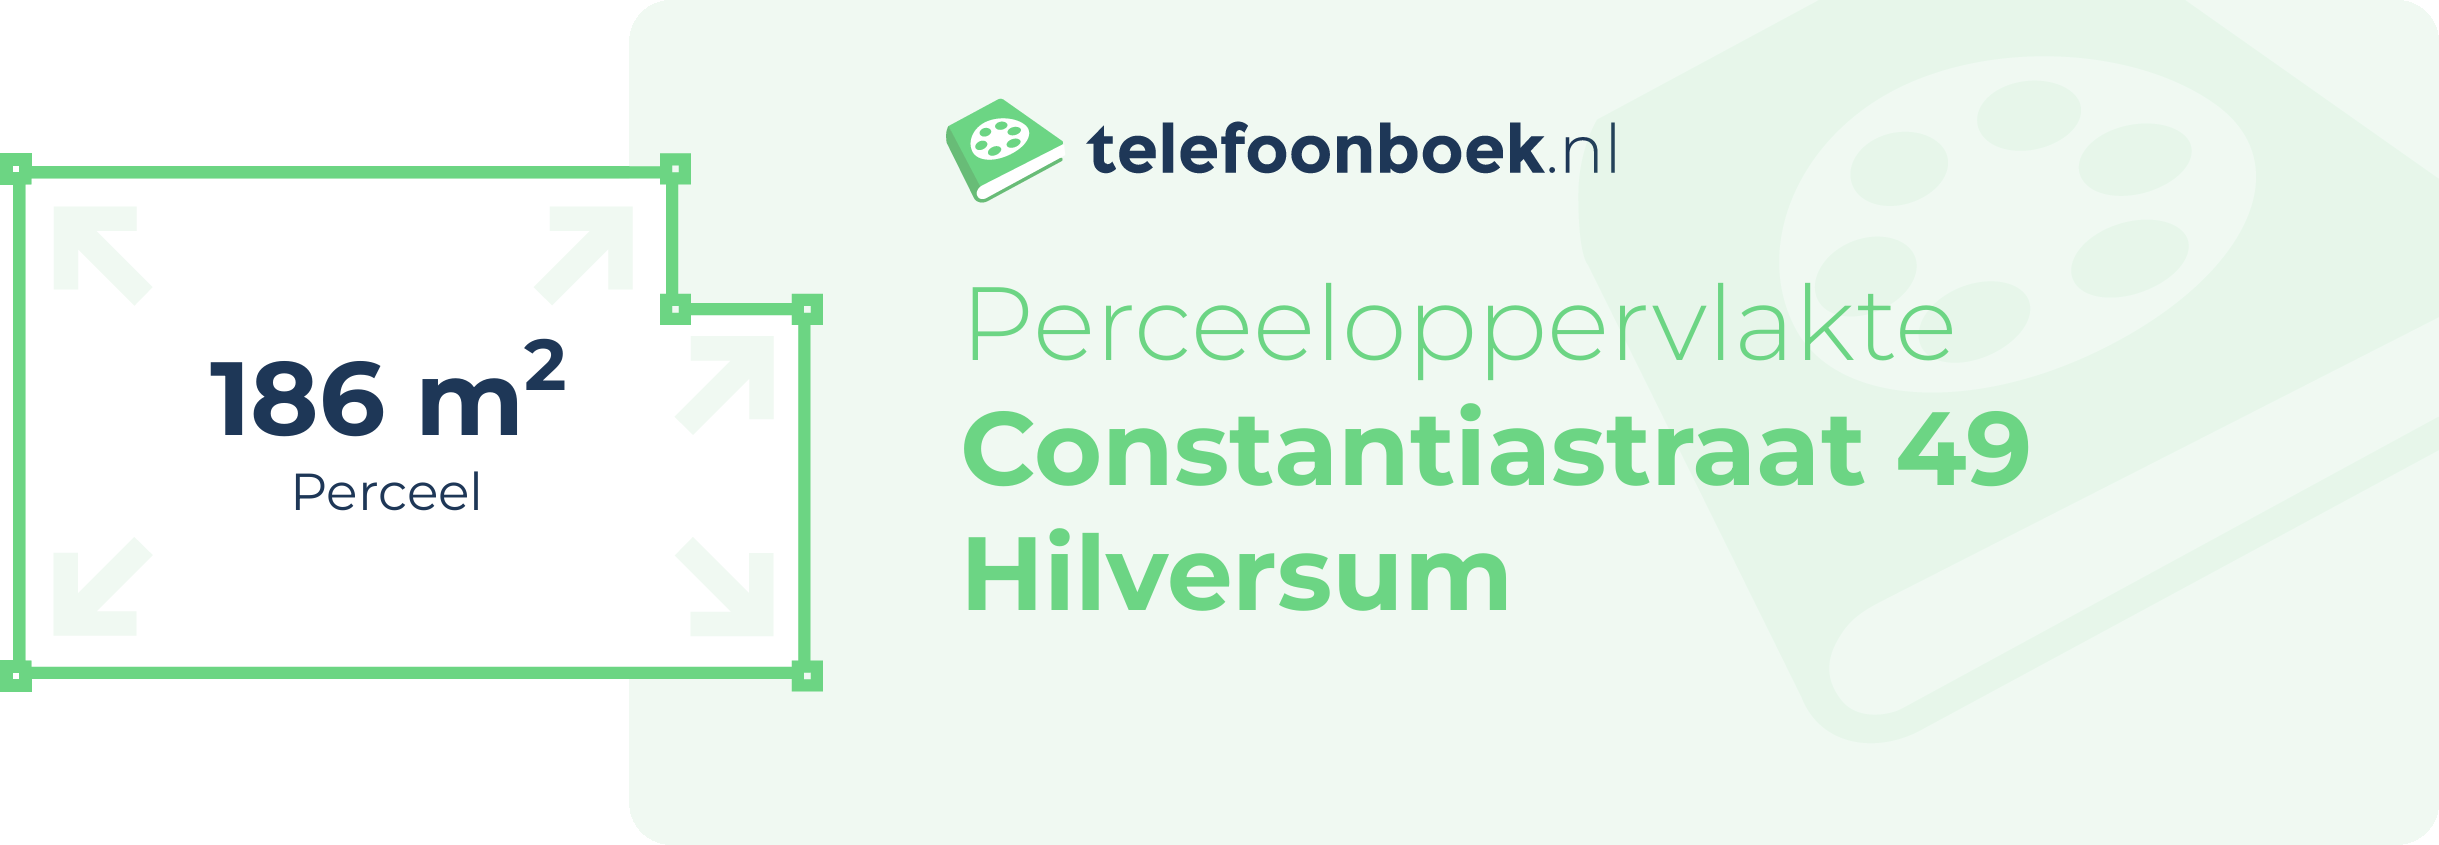 Perceeloppervlakte Constantiastraat 49 Hilversum